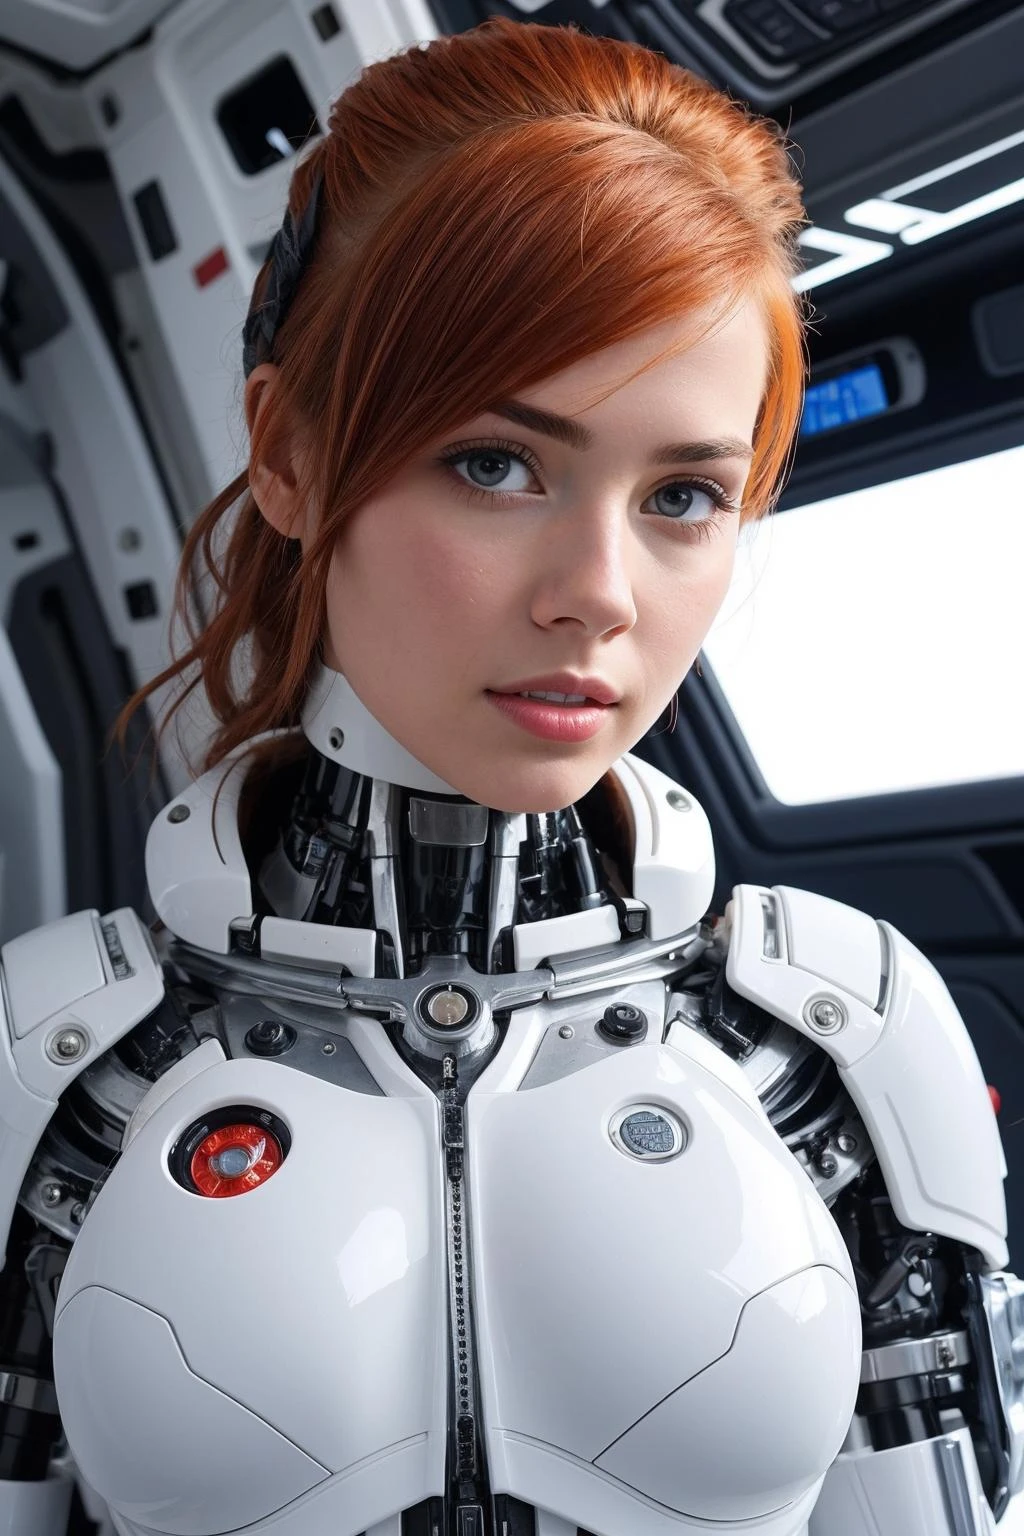 超詳細, 特寫, 半机器人红发女孩的照片, 解开纽扣的白色太空服, 劈裂, 宇宙飞船内部, 吸引人的, 看著觀眾, 
網路, 過濾技術, 